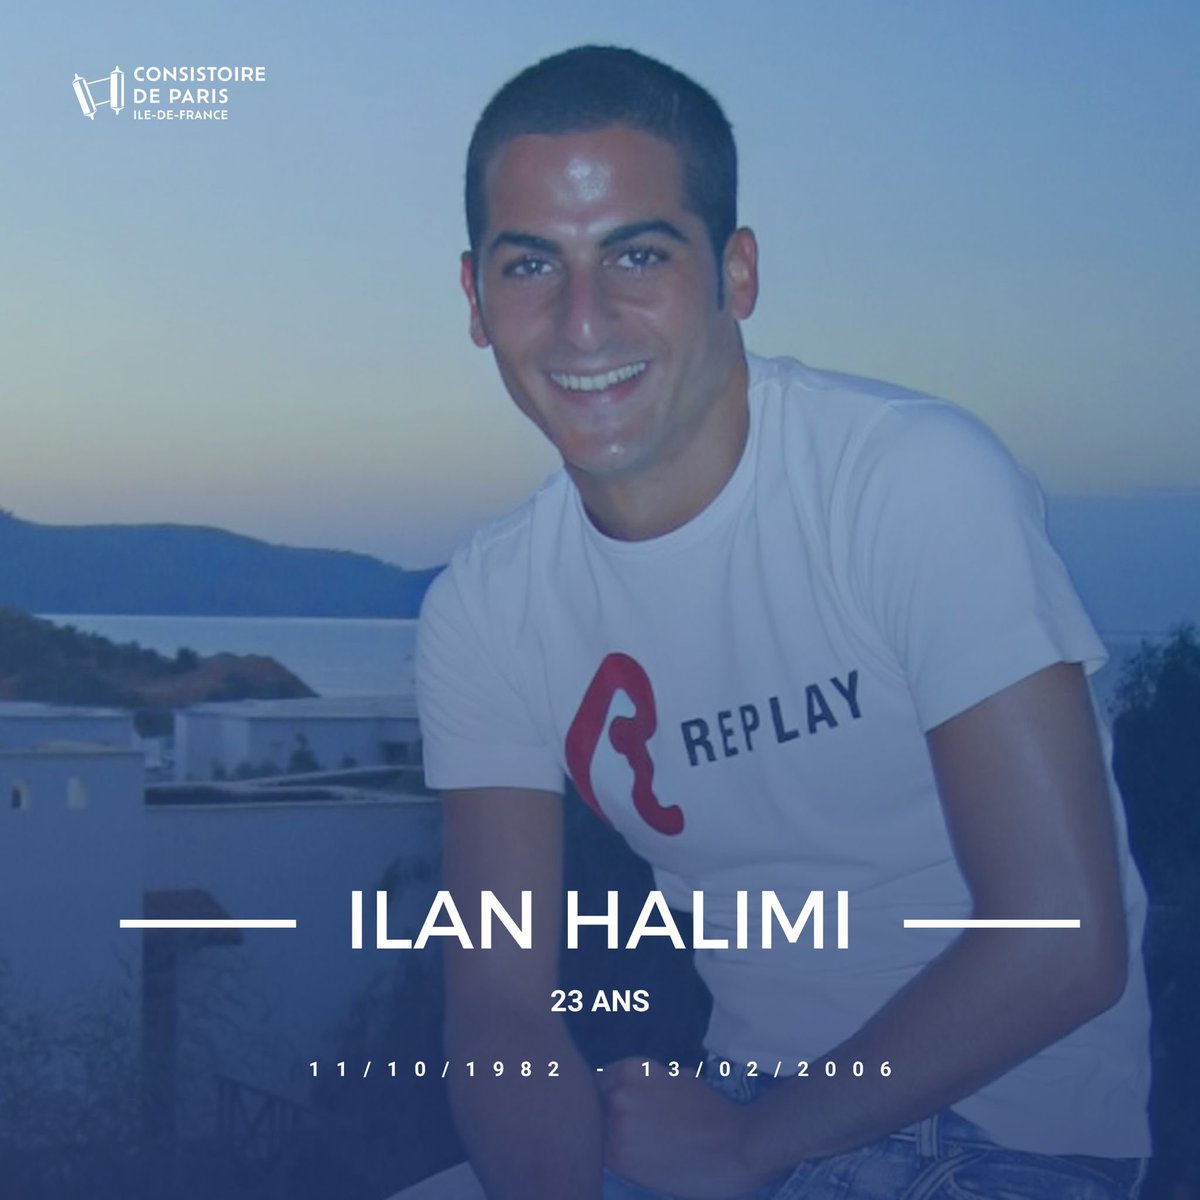 Il y a 18 ans, #IlanHalimi, 23 ans, enlevé, séquestré, torturé pendant 24 jours, puis assassiné par le gang des barbares, parce que #juif. Que son souvenir soit une bénédiction.🕯️ 18 ans après, l'antisémitisme est plus que jamais d'actualité. Ensemble, luttons contre ce fléau !